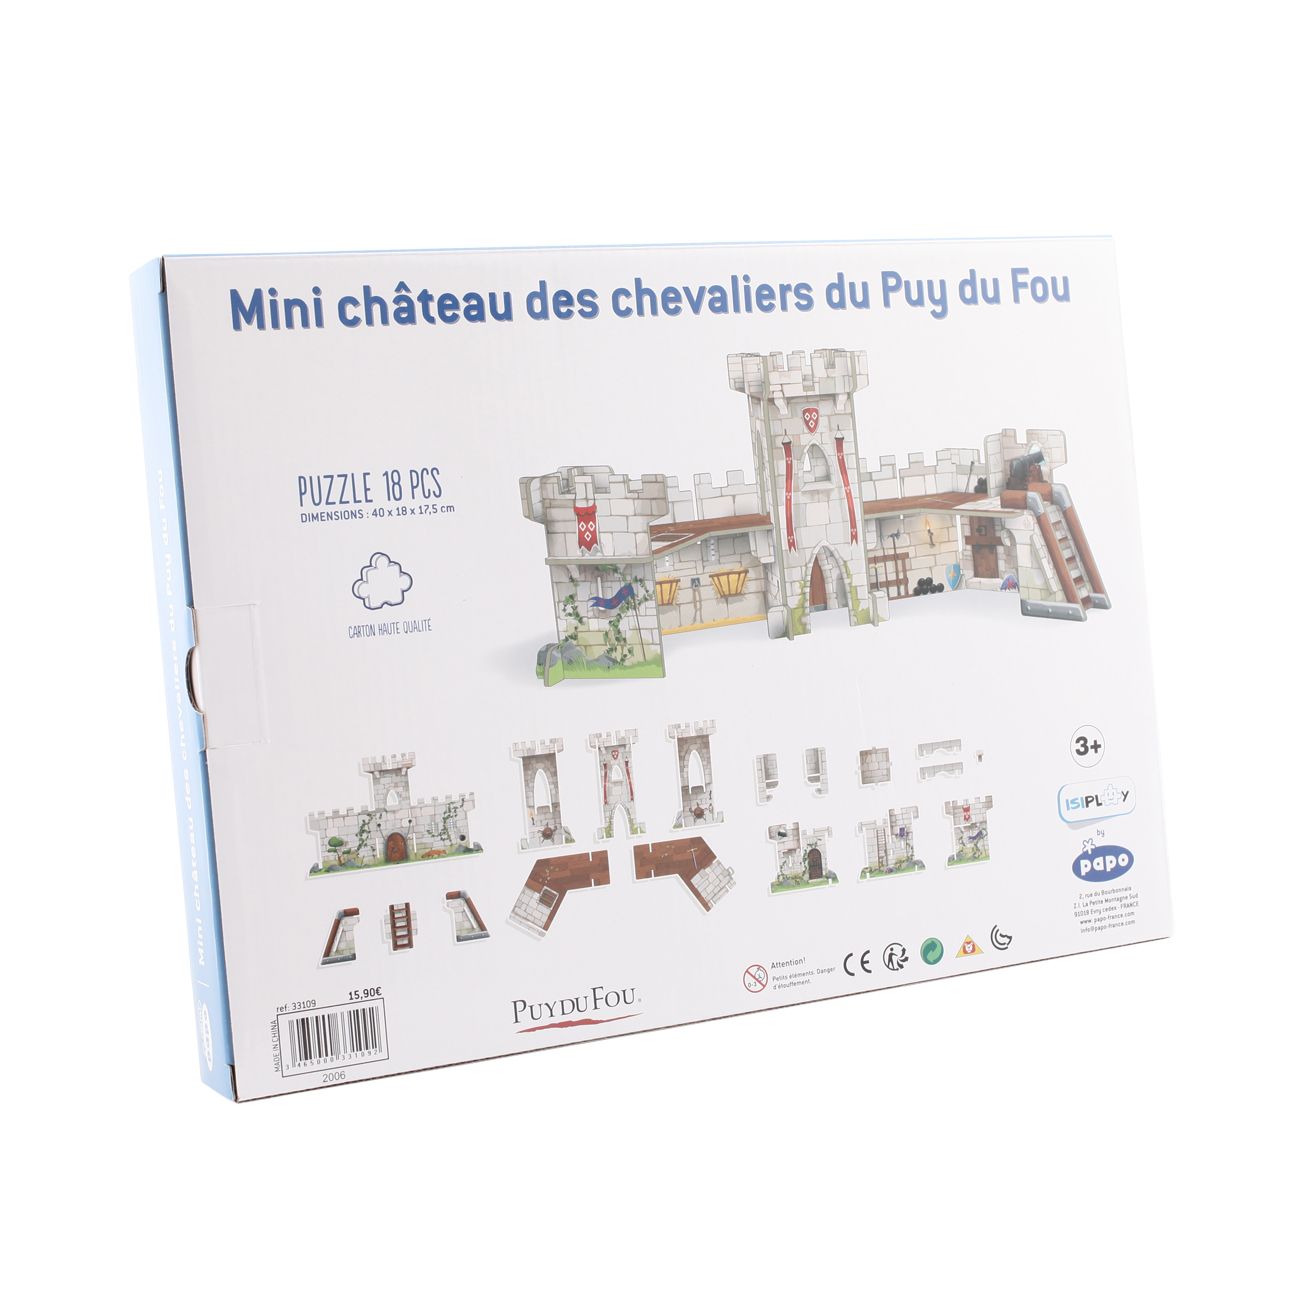 Dos boite mini-chateau Puy du Fou